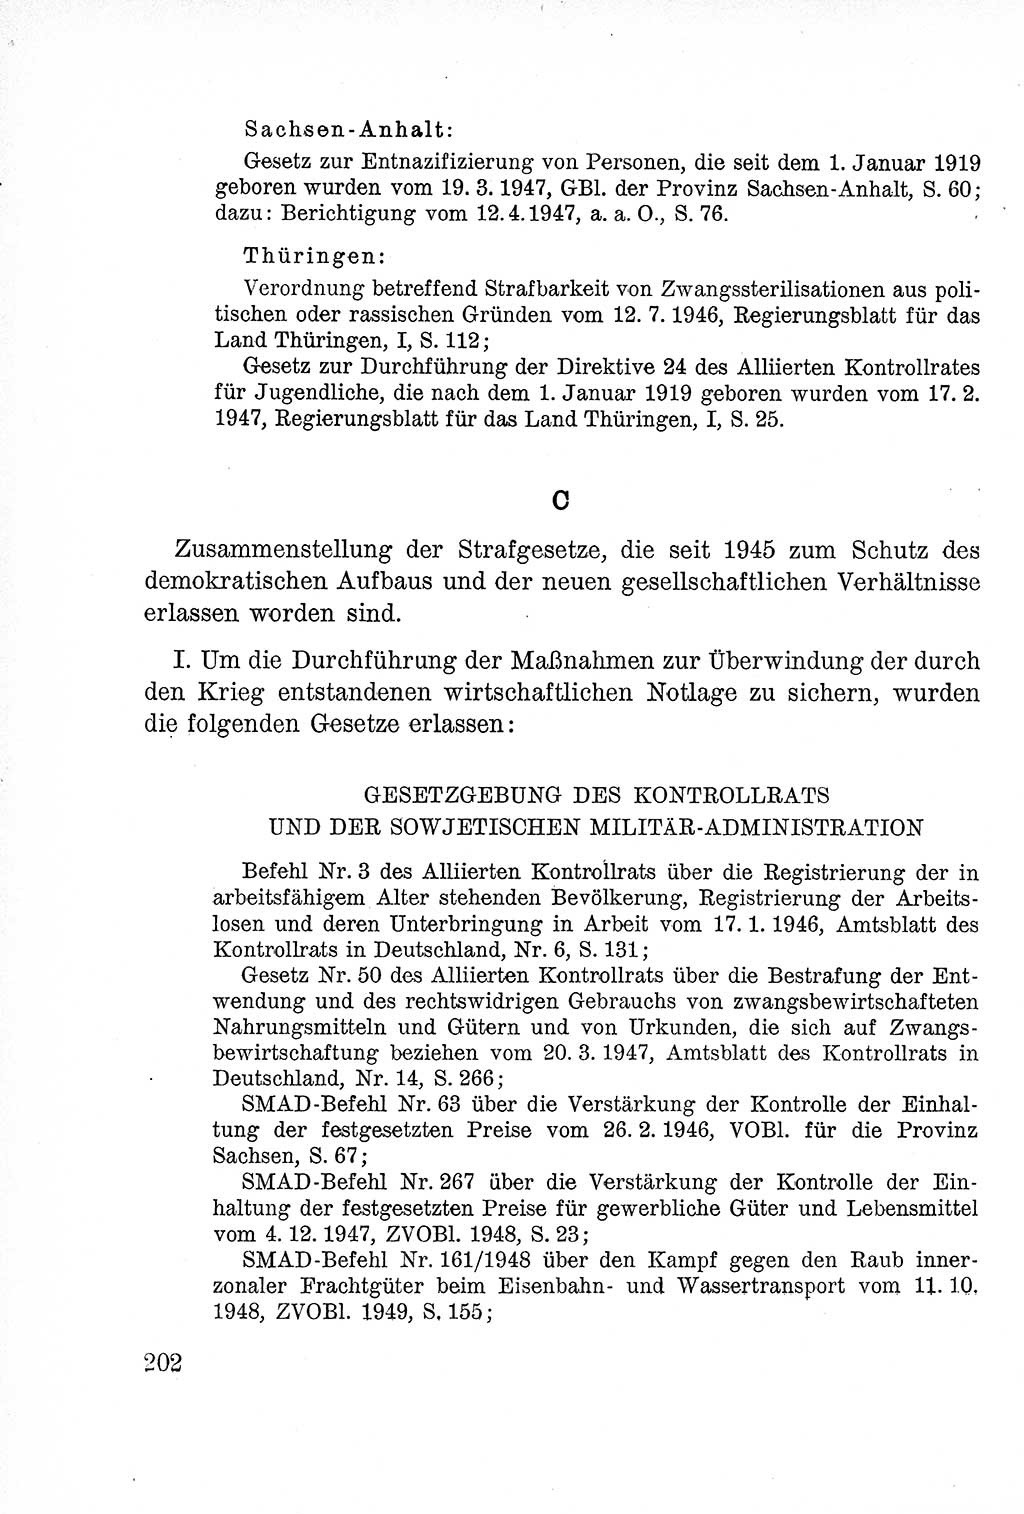 Lehrbuch des Strafrechts der Deutschen Demokratischen Republik (DDR), Allgemeiner Teil 1957, Seite 202 (Lb. Strafr. DDR AT 1957, S. 202)